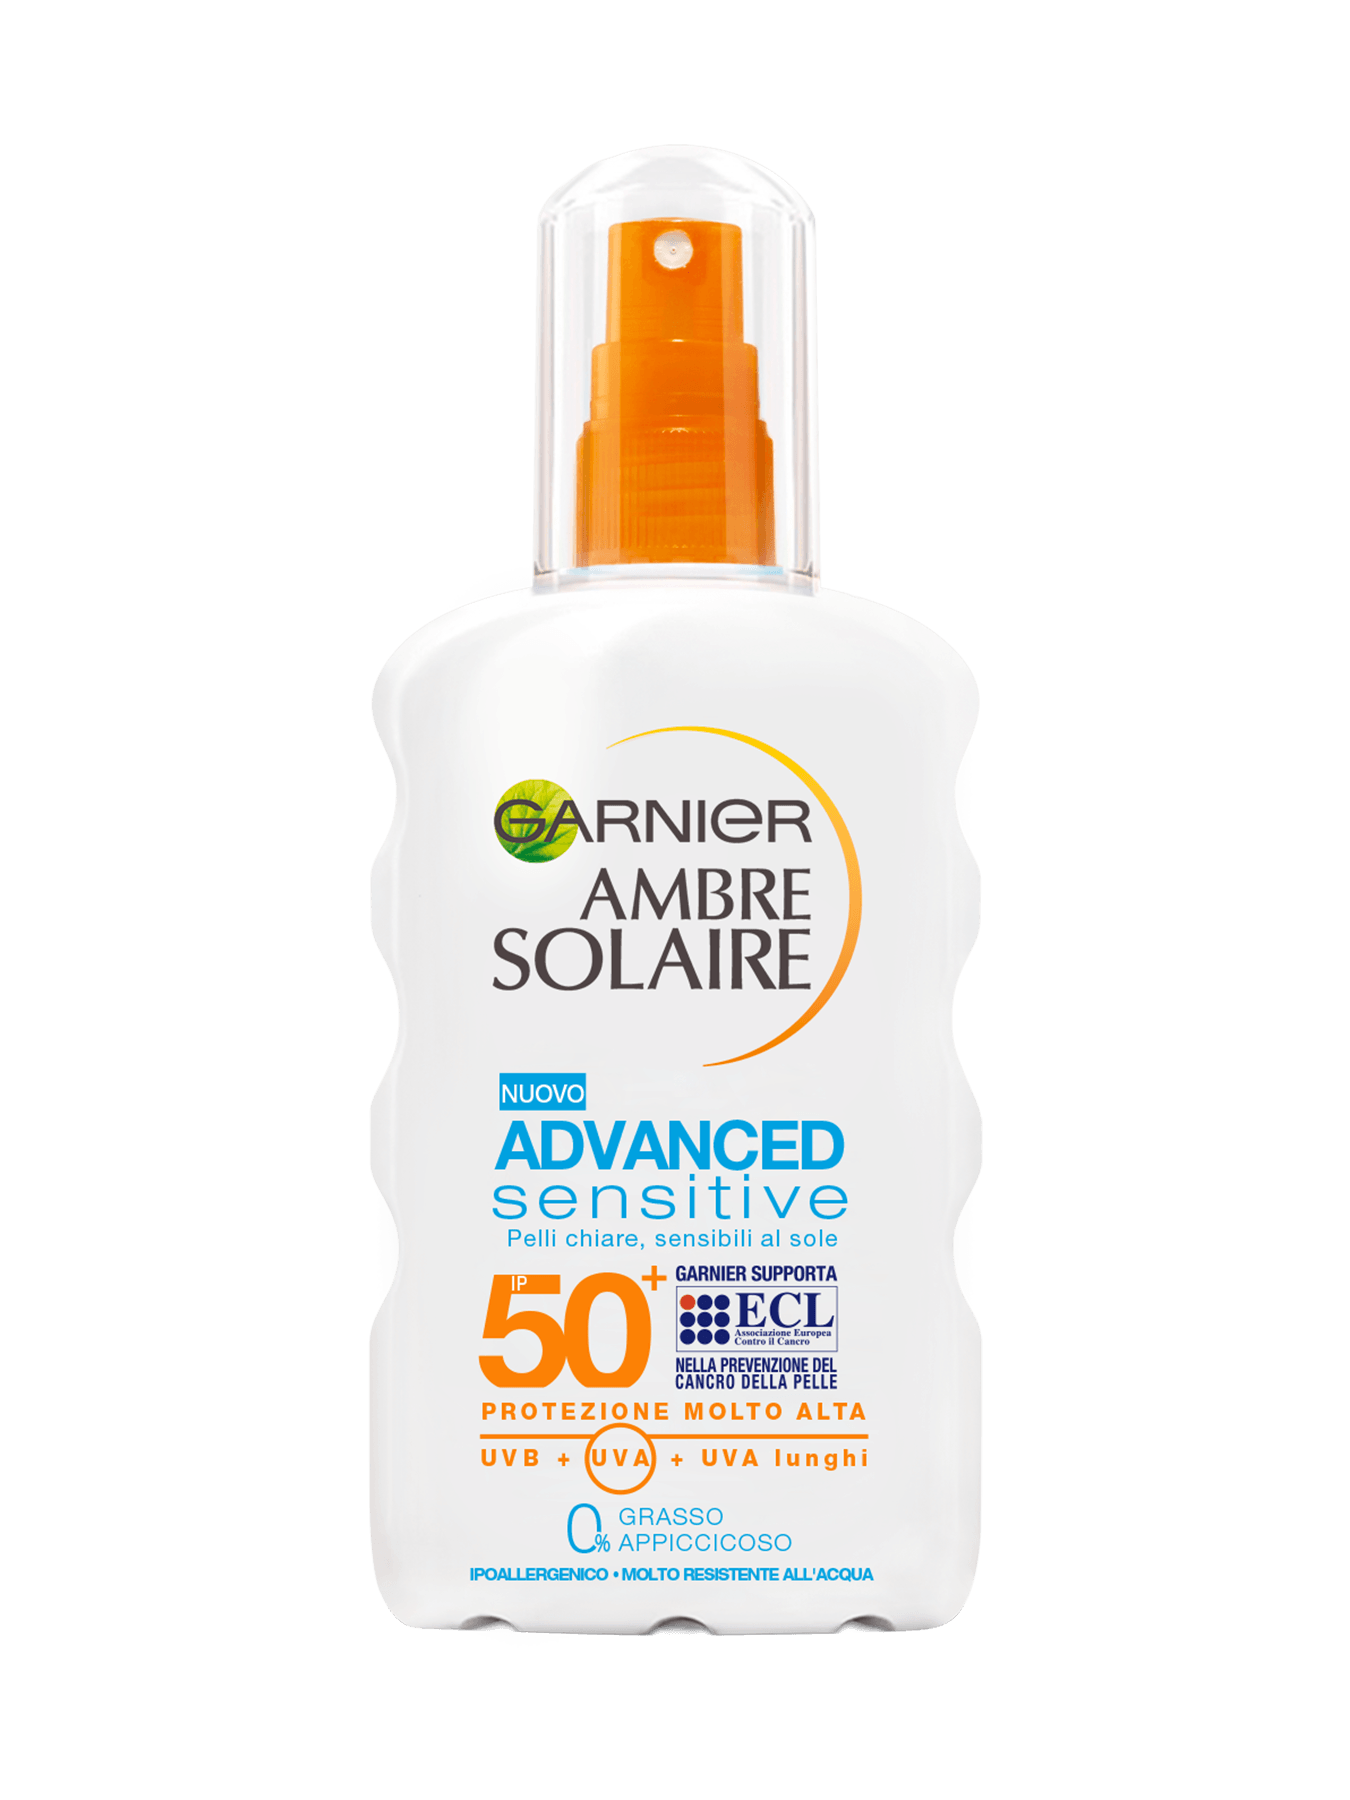 ambre solaire advance sensitive 50+